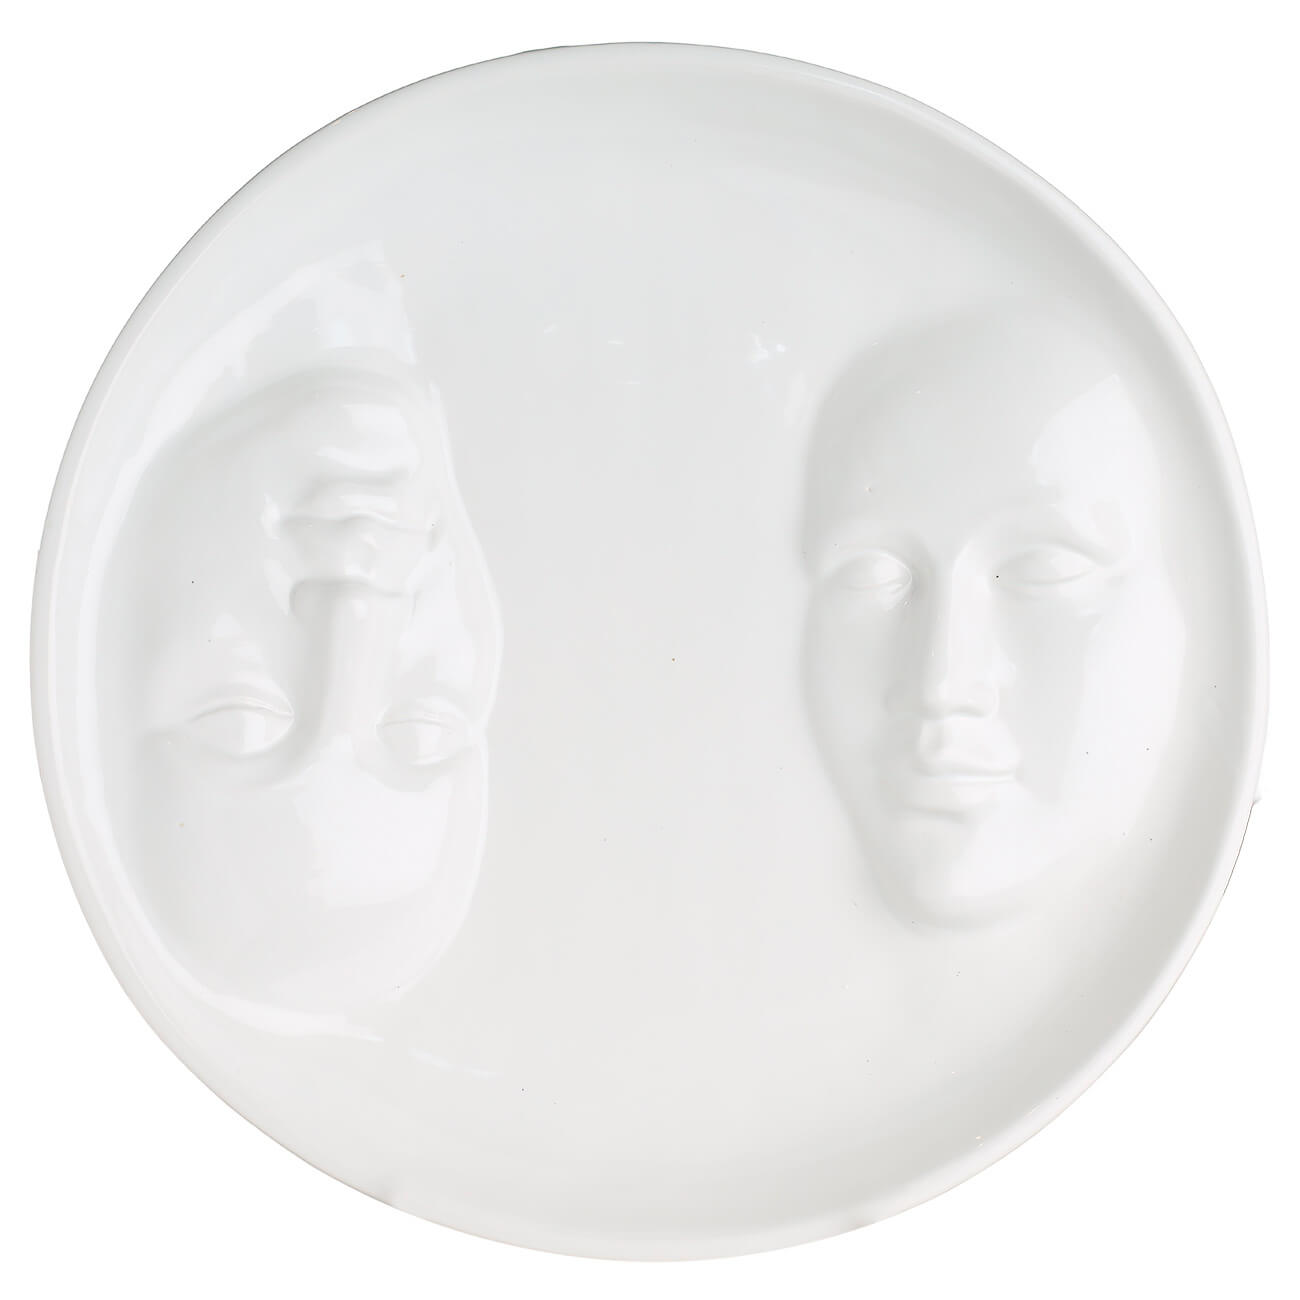 блюдо 24 см керамика белое лицо face Блюдо, 29 см, керамика, белое, Лица, Face